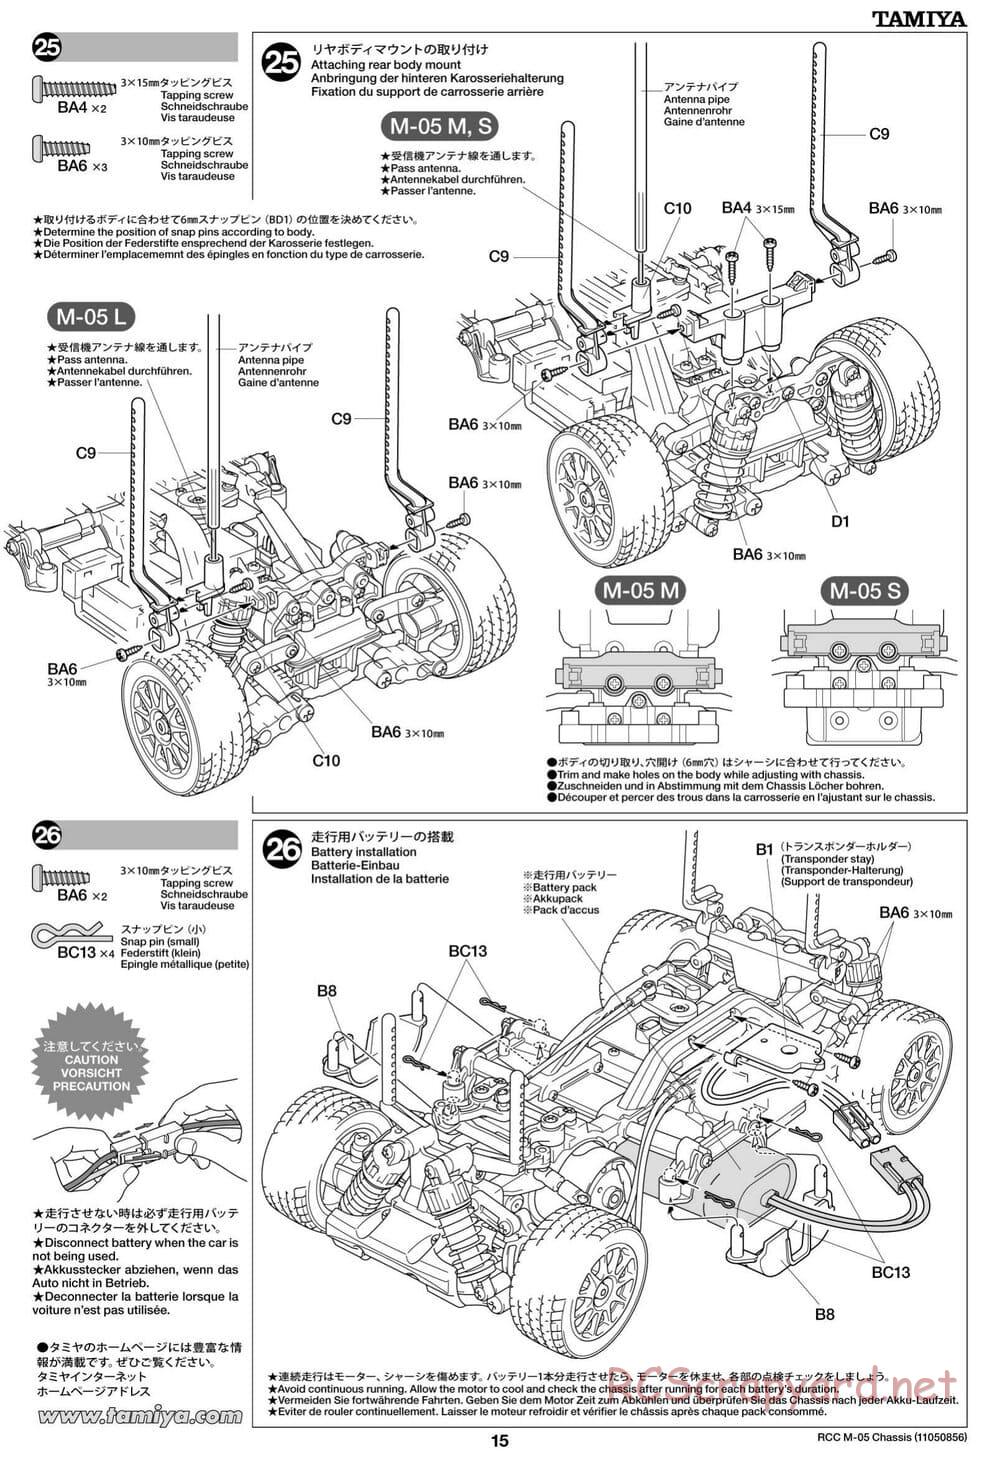 Tamiya - M-05 Chassis - Manual - Page 15